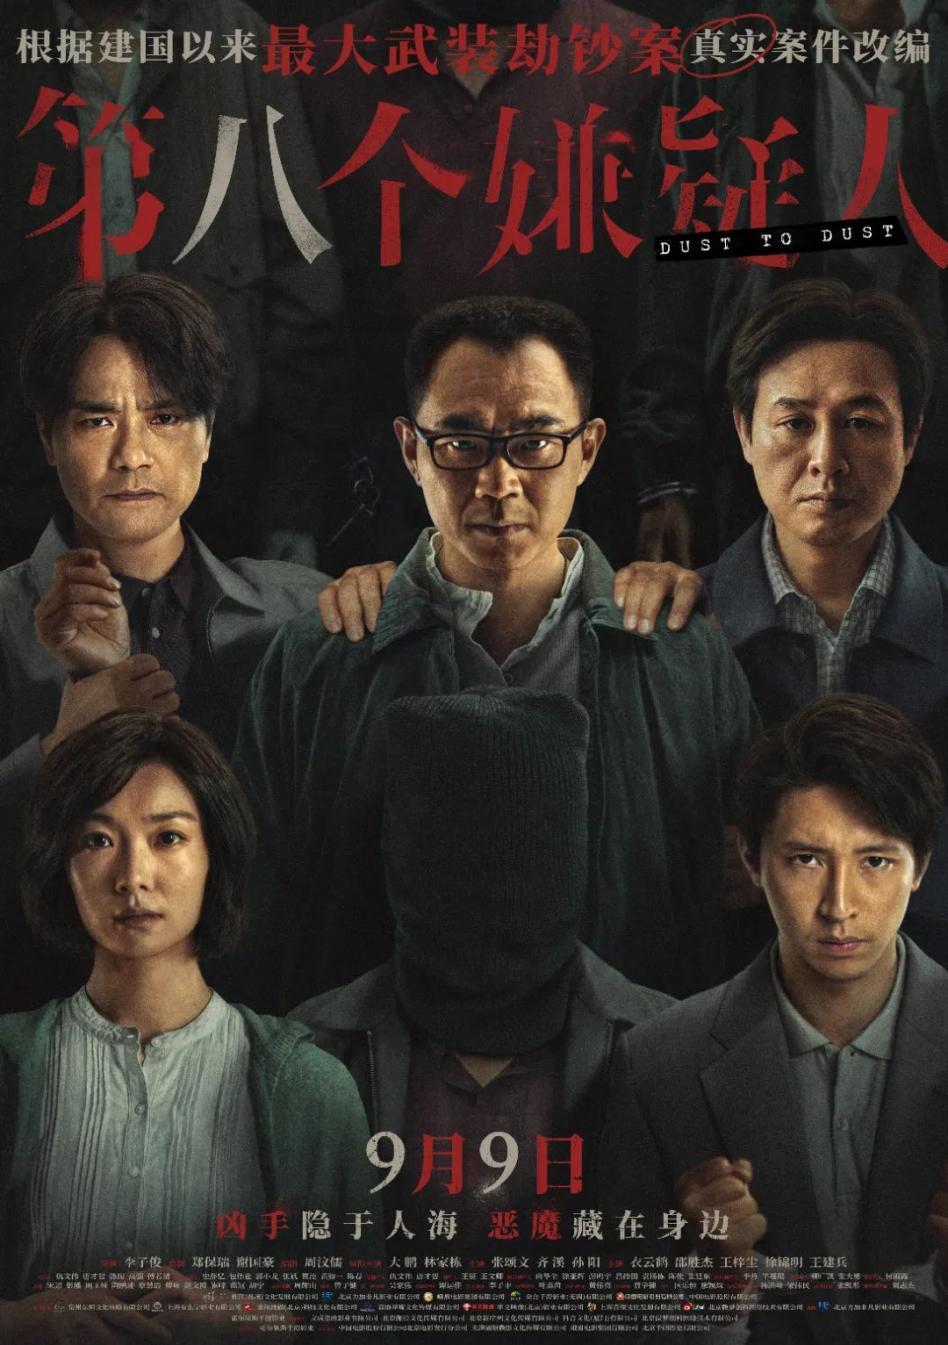 苏州高铁新城影视企业出品电影《第八个嫌疑人》将于9月9日全国公映